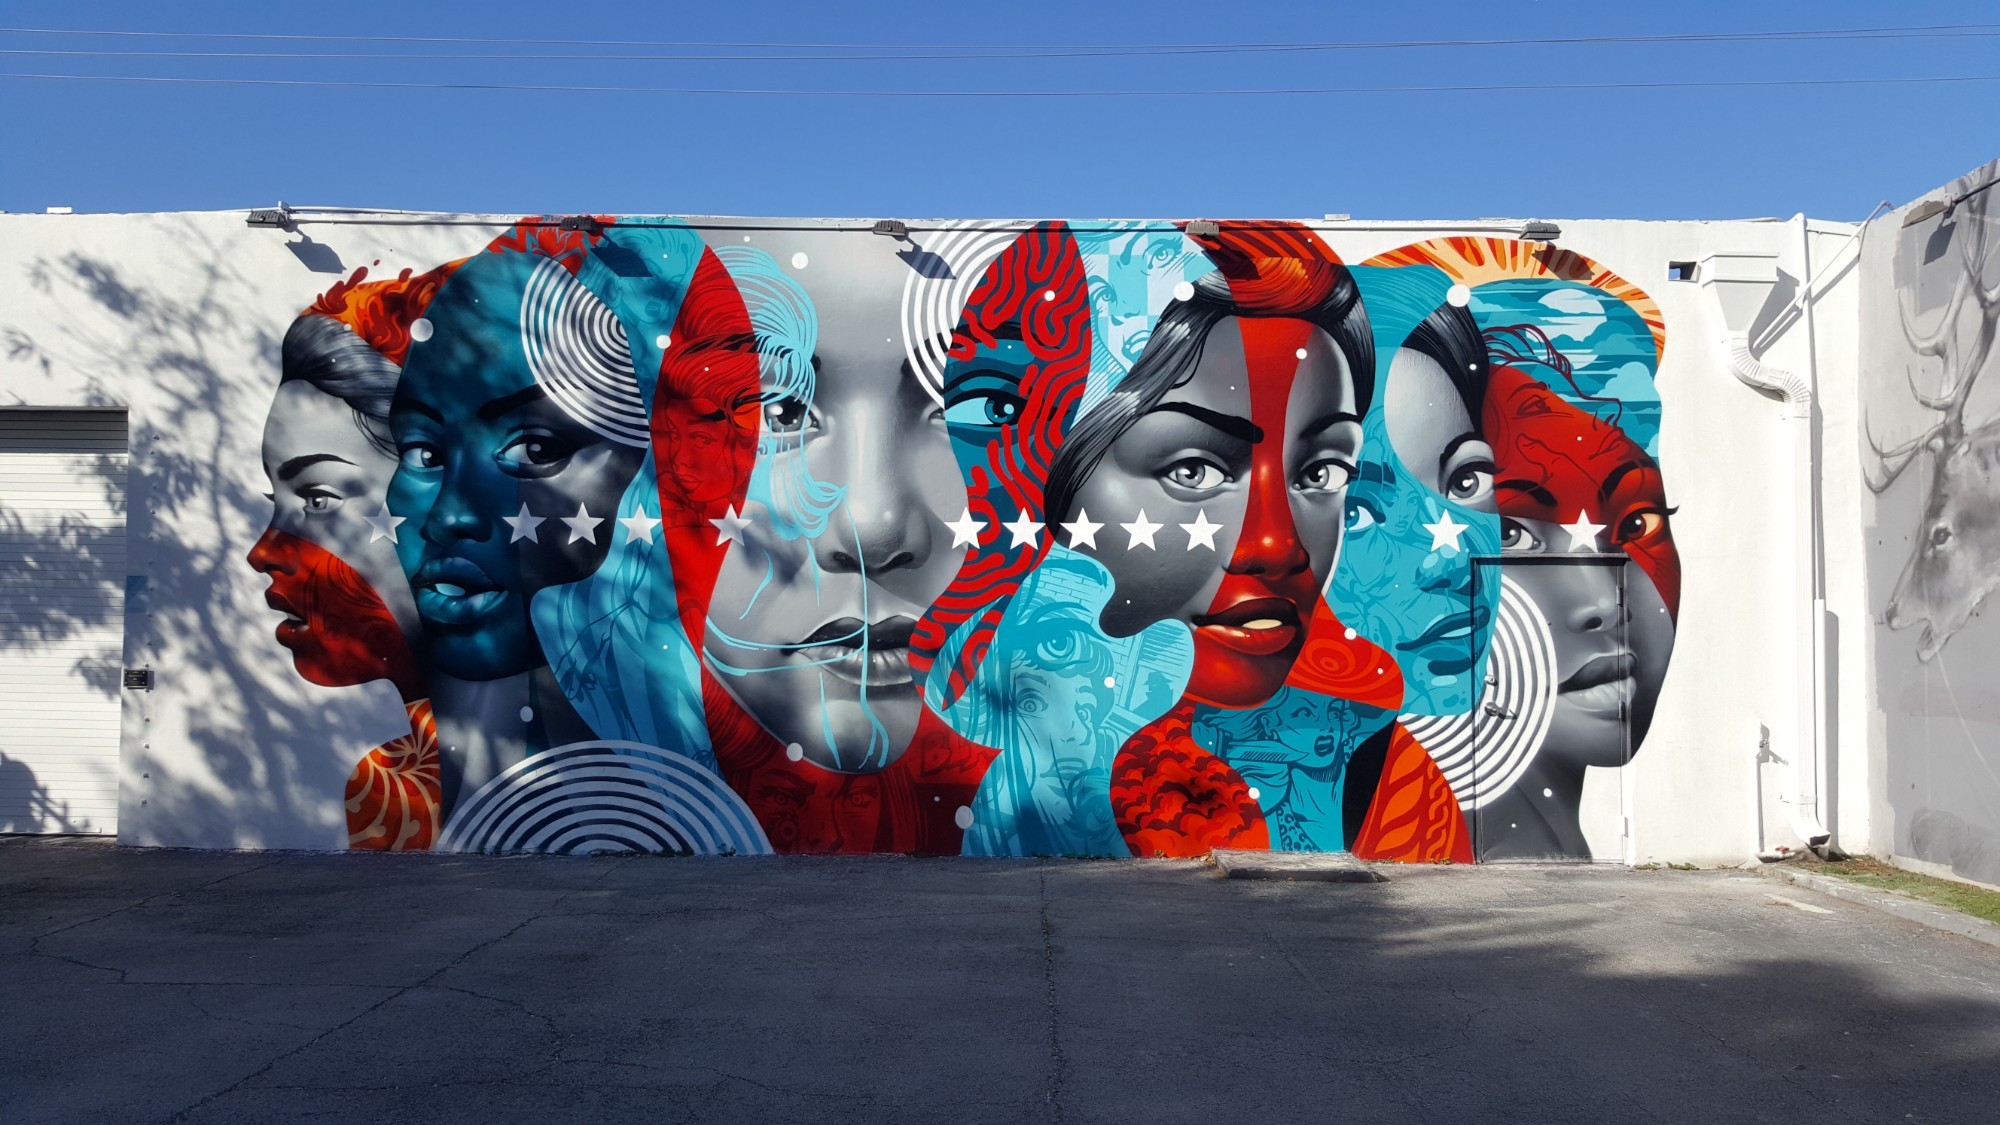 Wynwood walls, Miami<br/>
Graffiti art